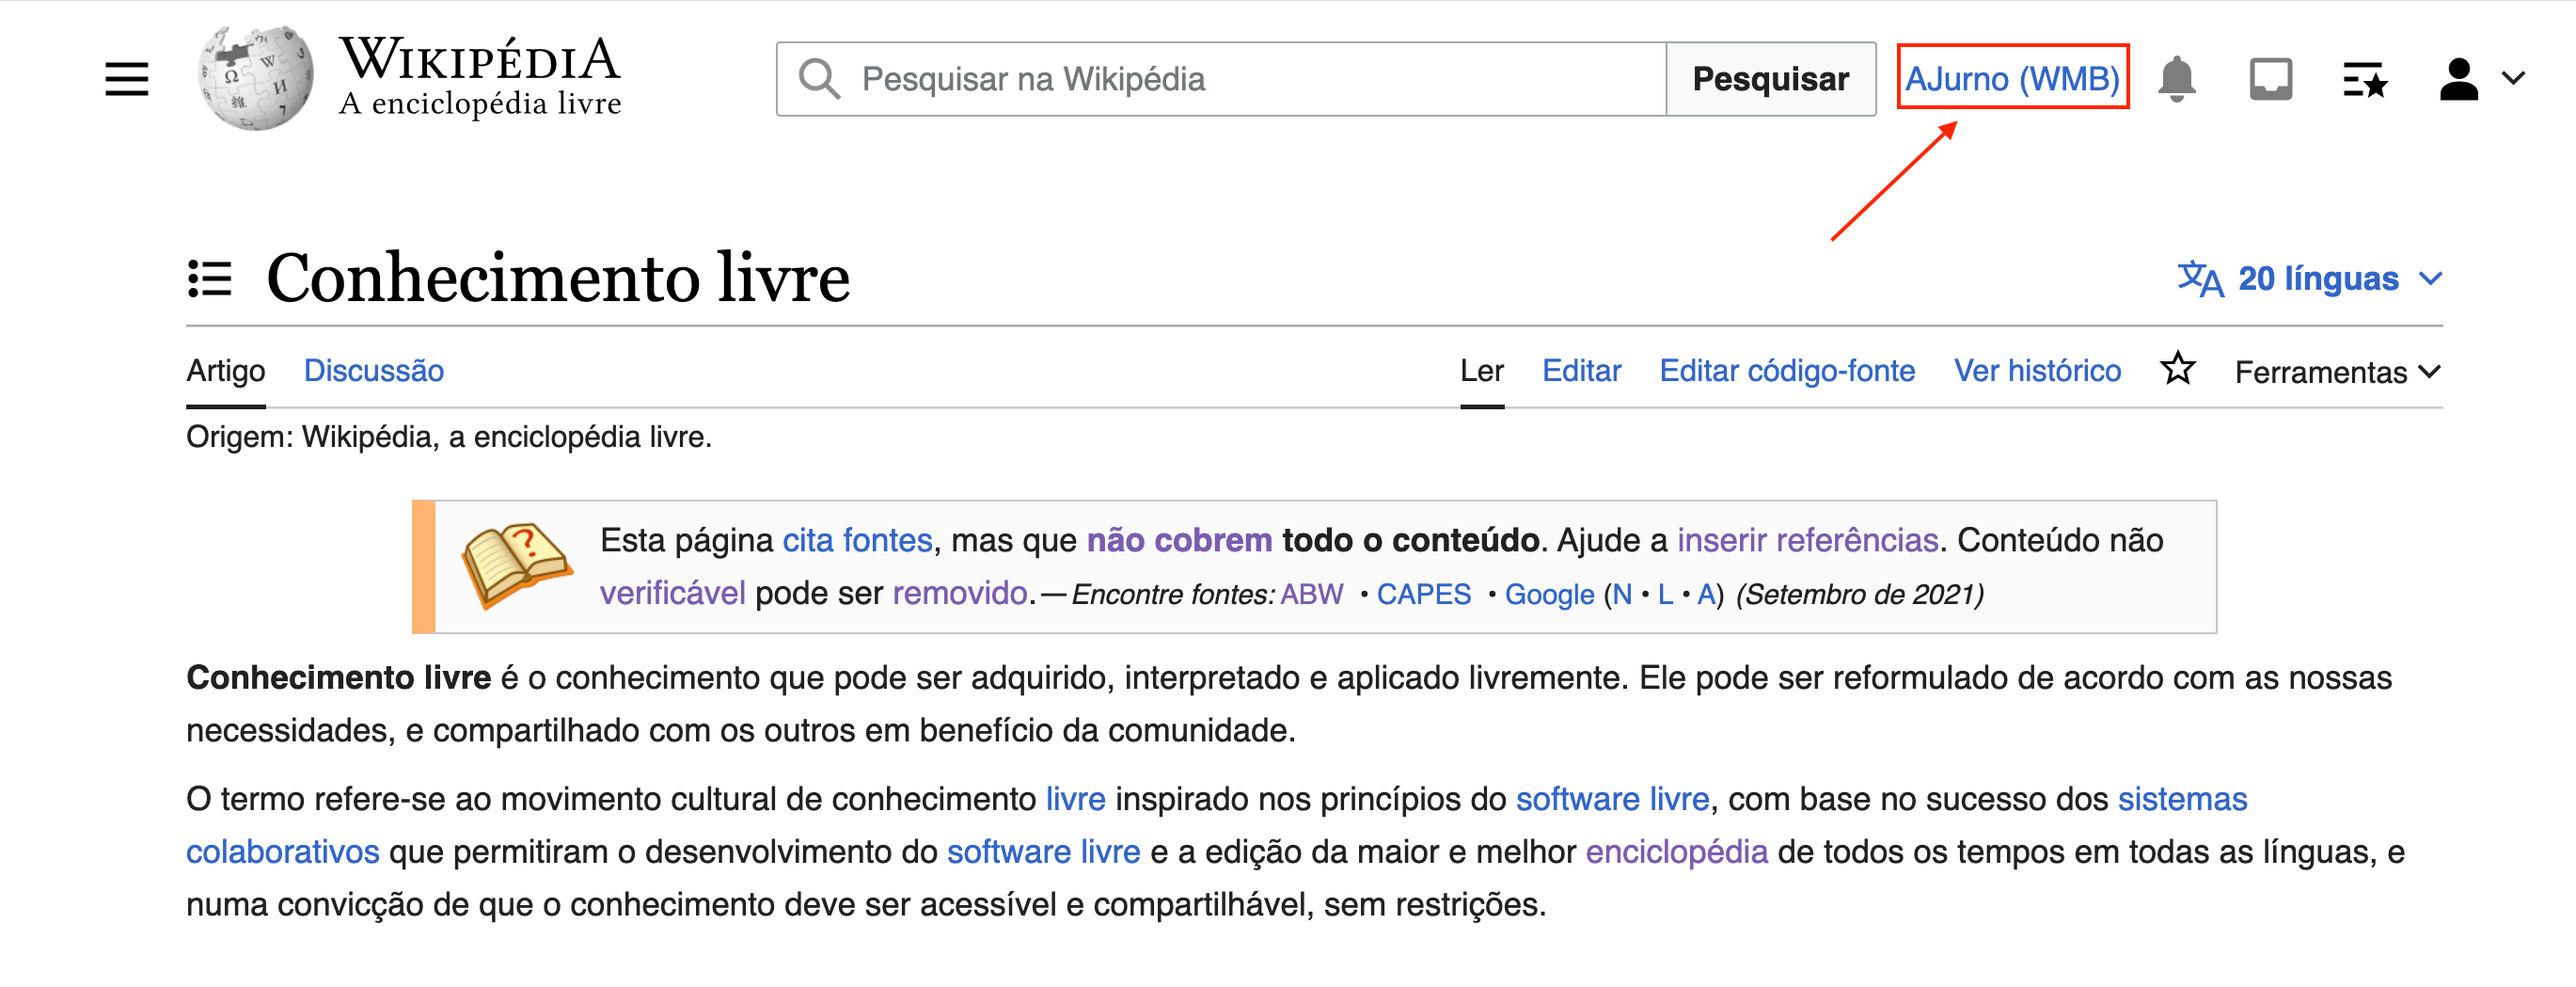 Como editar páginas da Wikipédia?